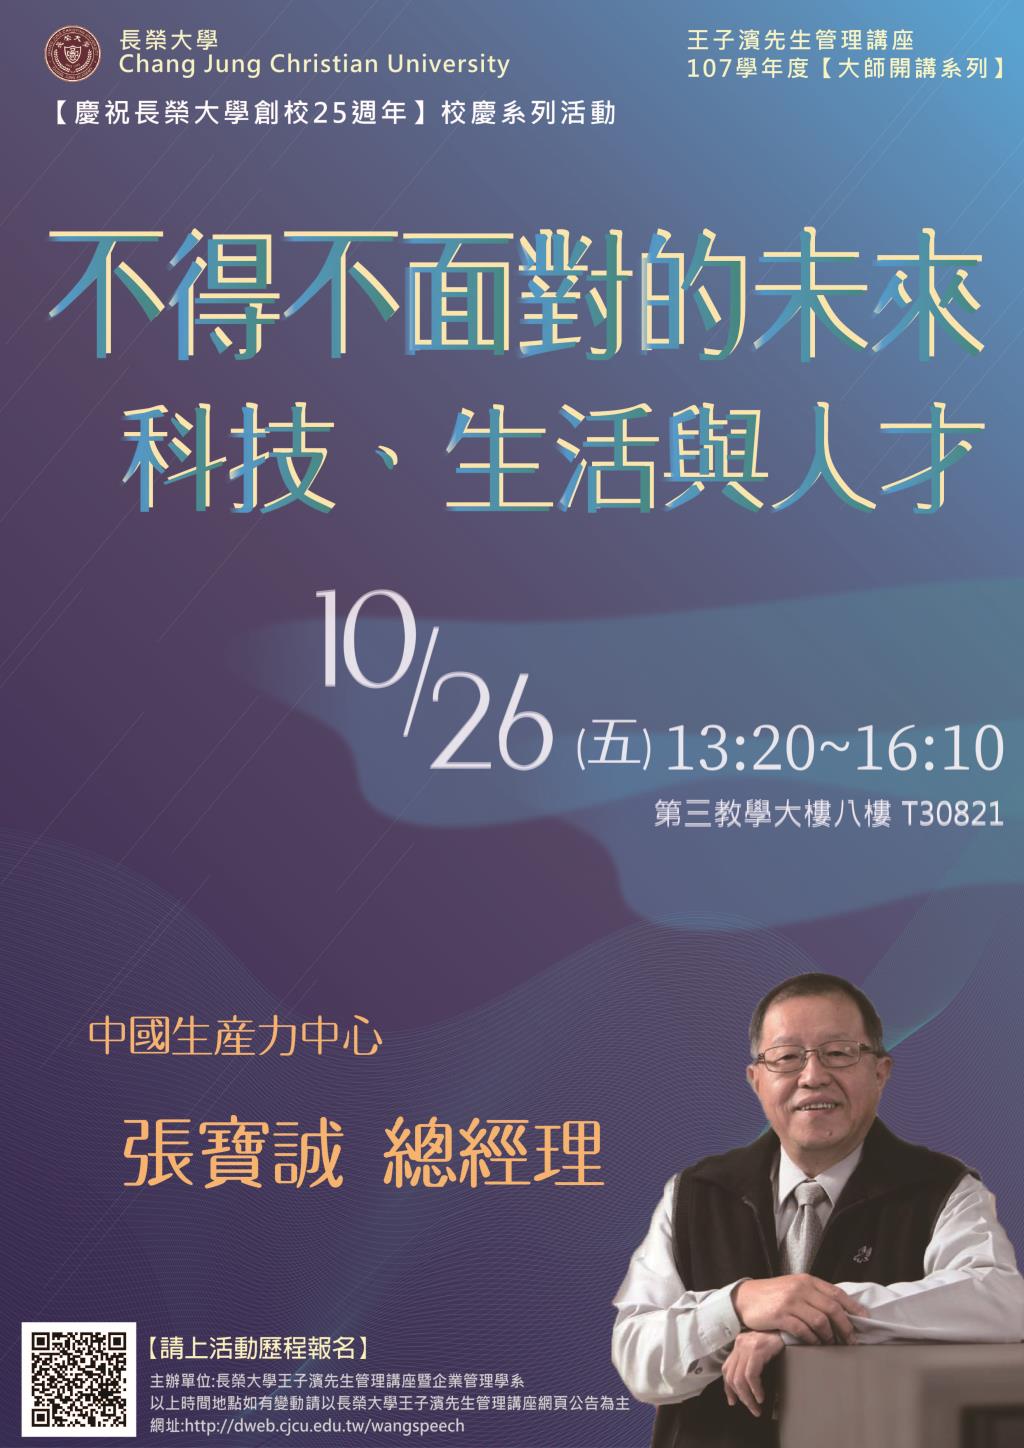 敬邀參加週五晚上(10/26)王子濱先生管理講座---中國生產力中心   張寶誠總經理